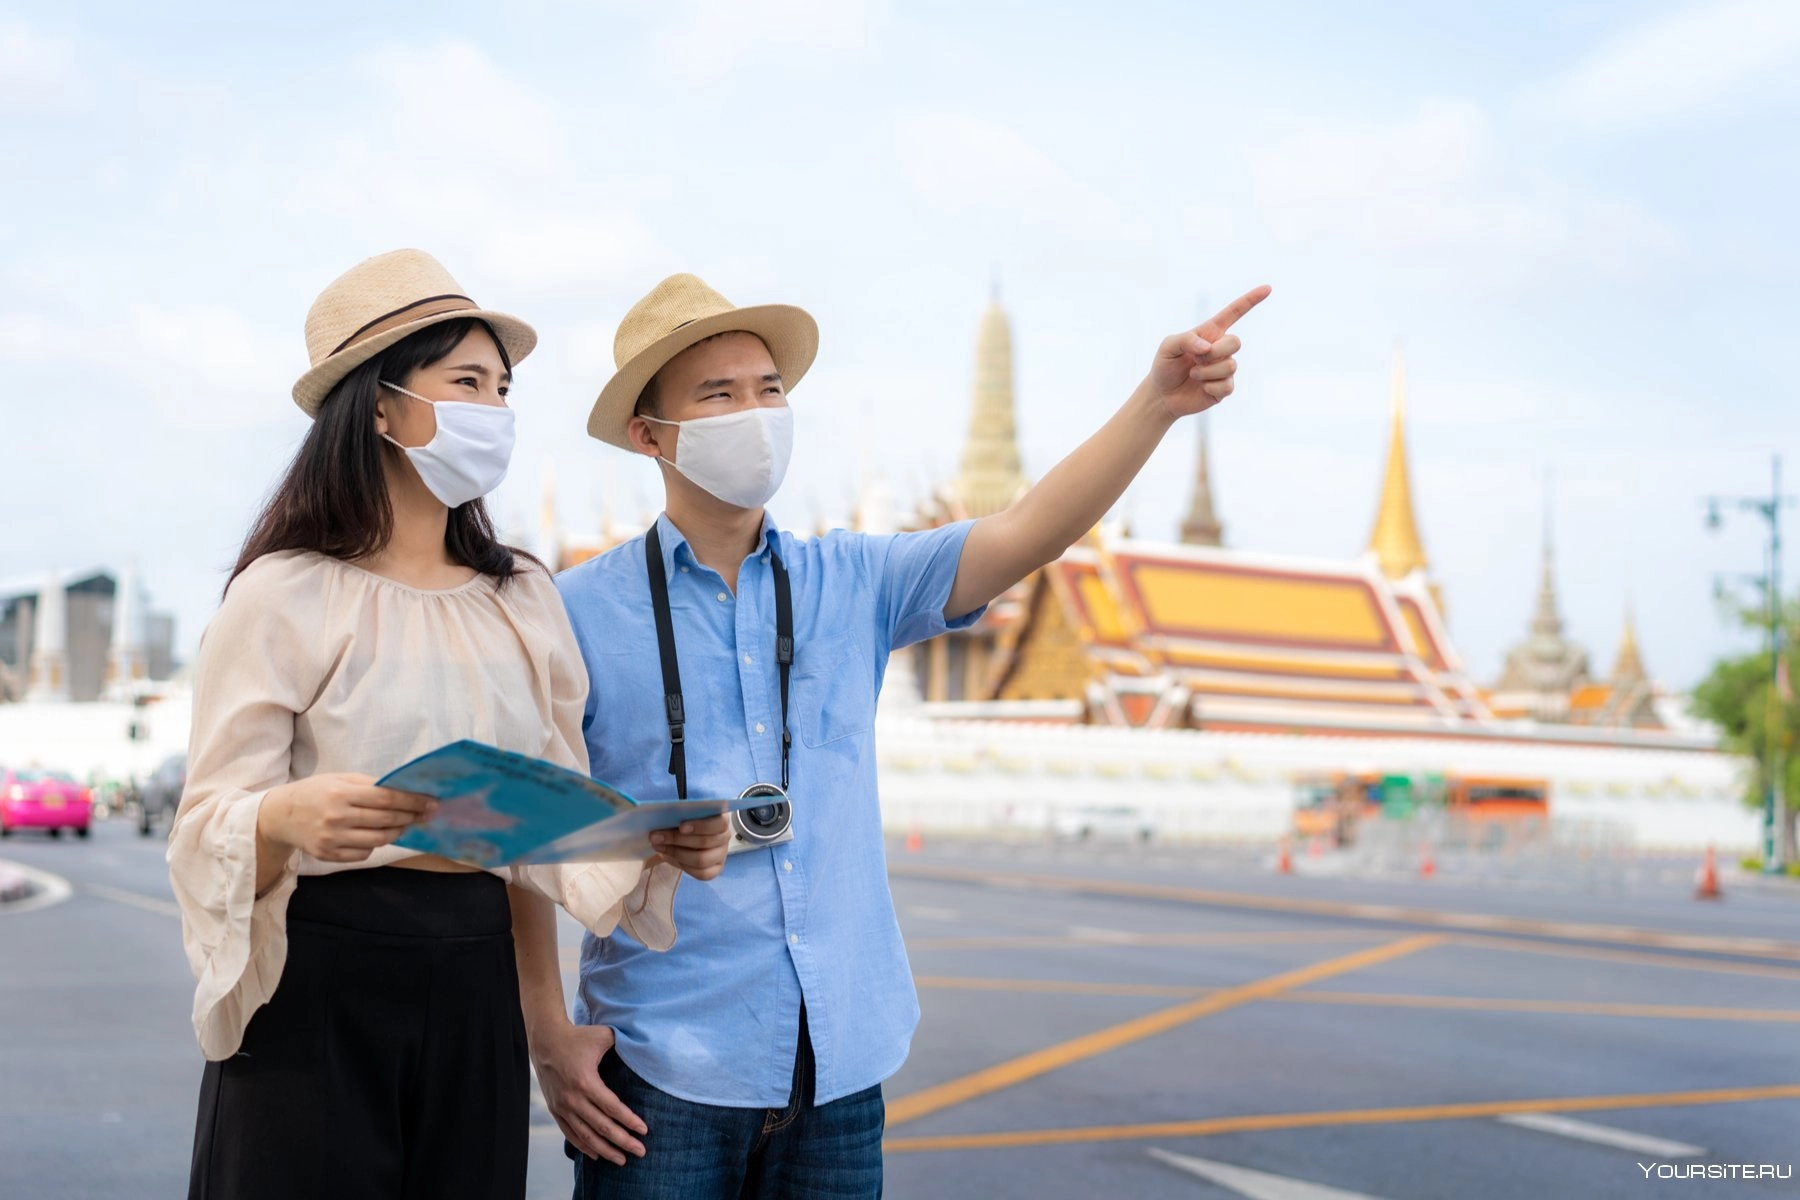 ТОП-10 правил безопасности для туристов в столице Таиланда